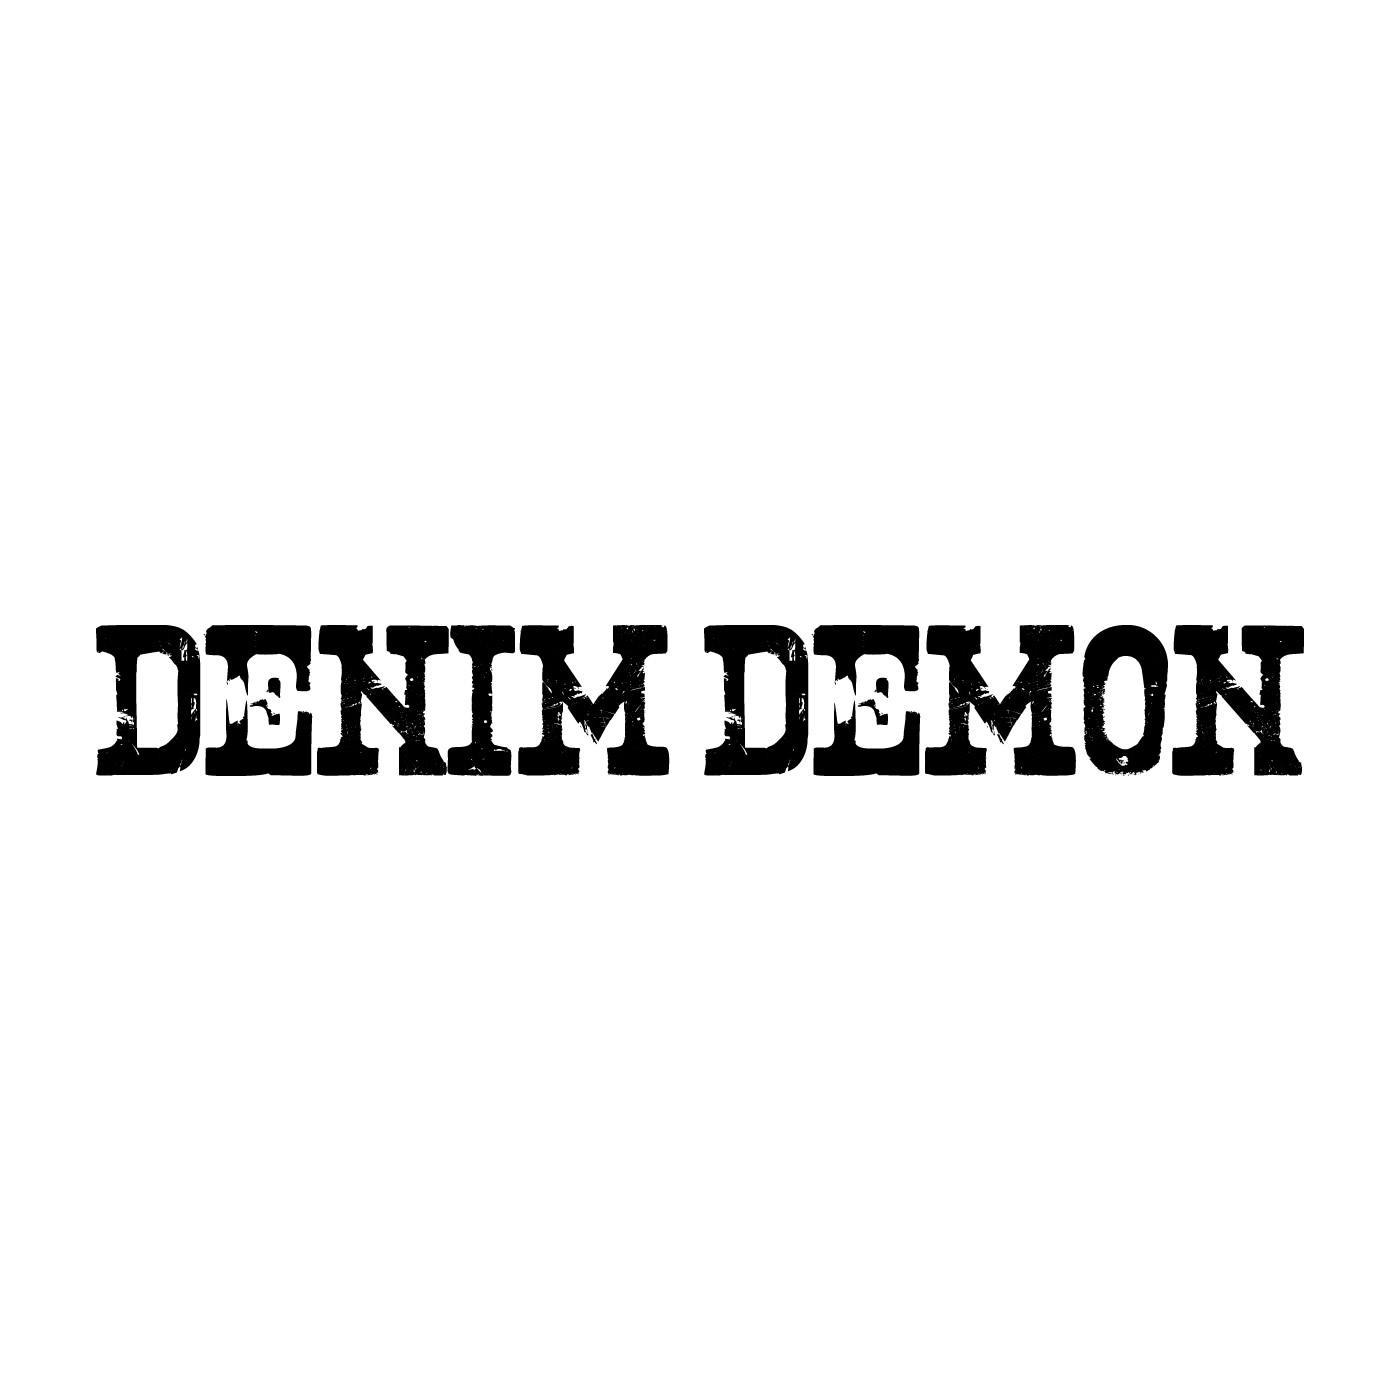 DENIM DEMON